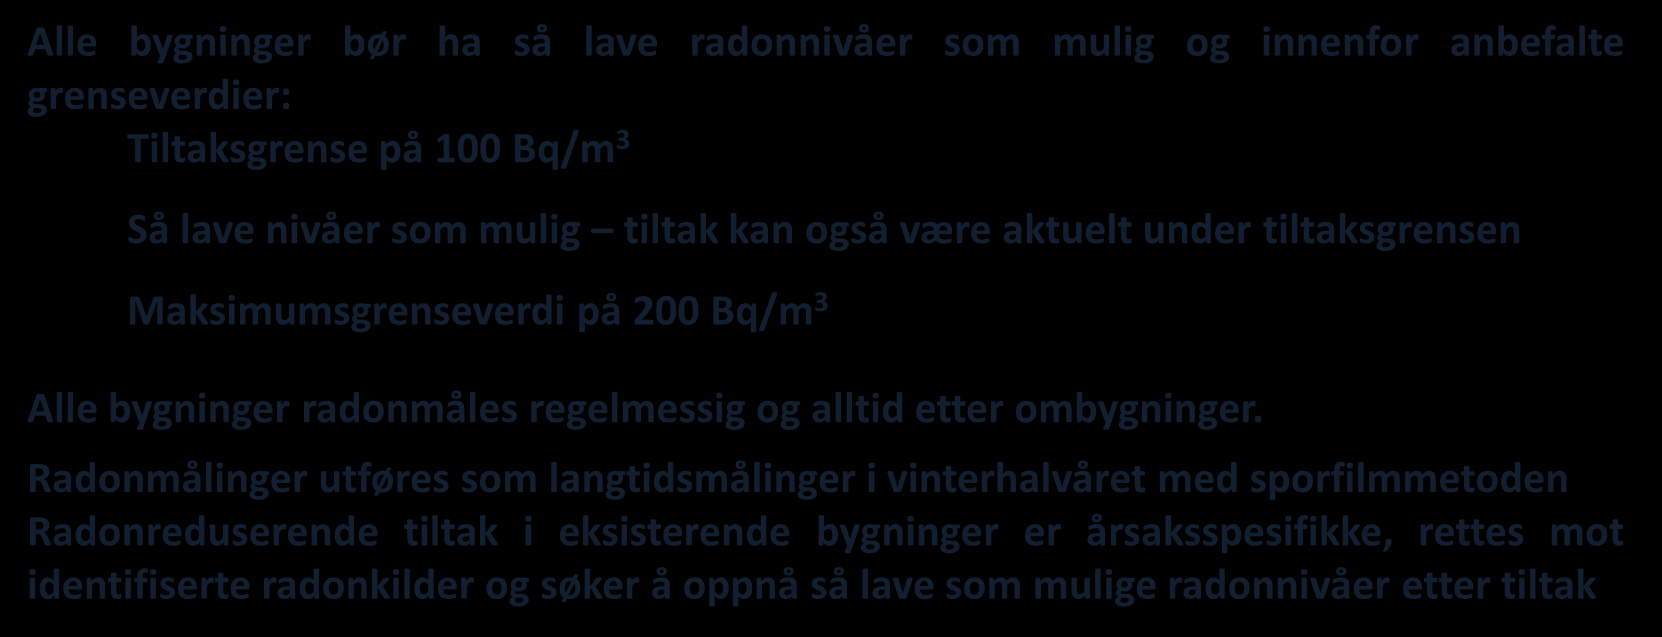 Strålevernets anbefalinger for radon Strålevernet publiserte nye anbefalinger for radon 11.09.